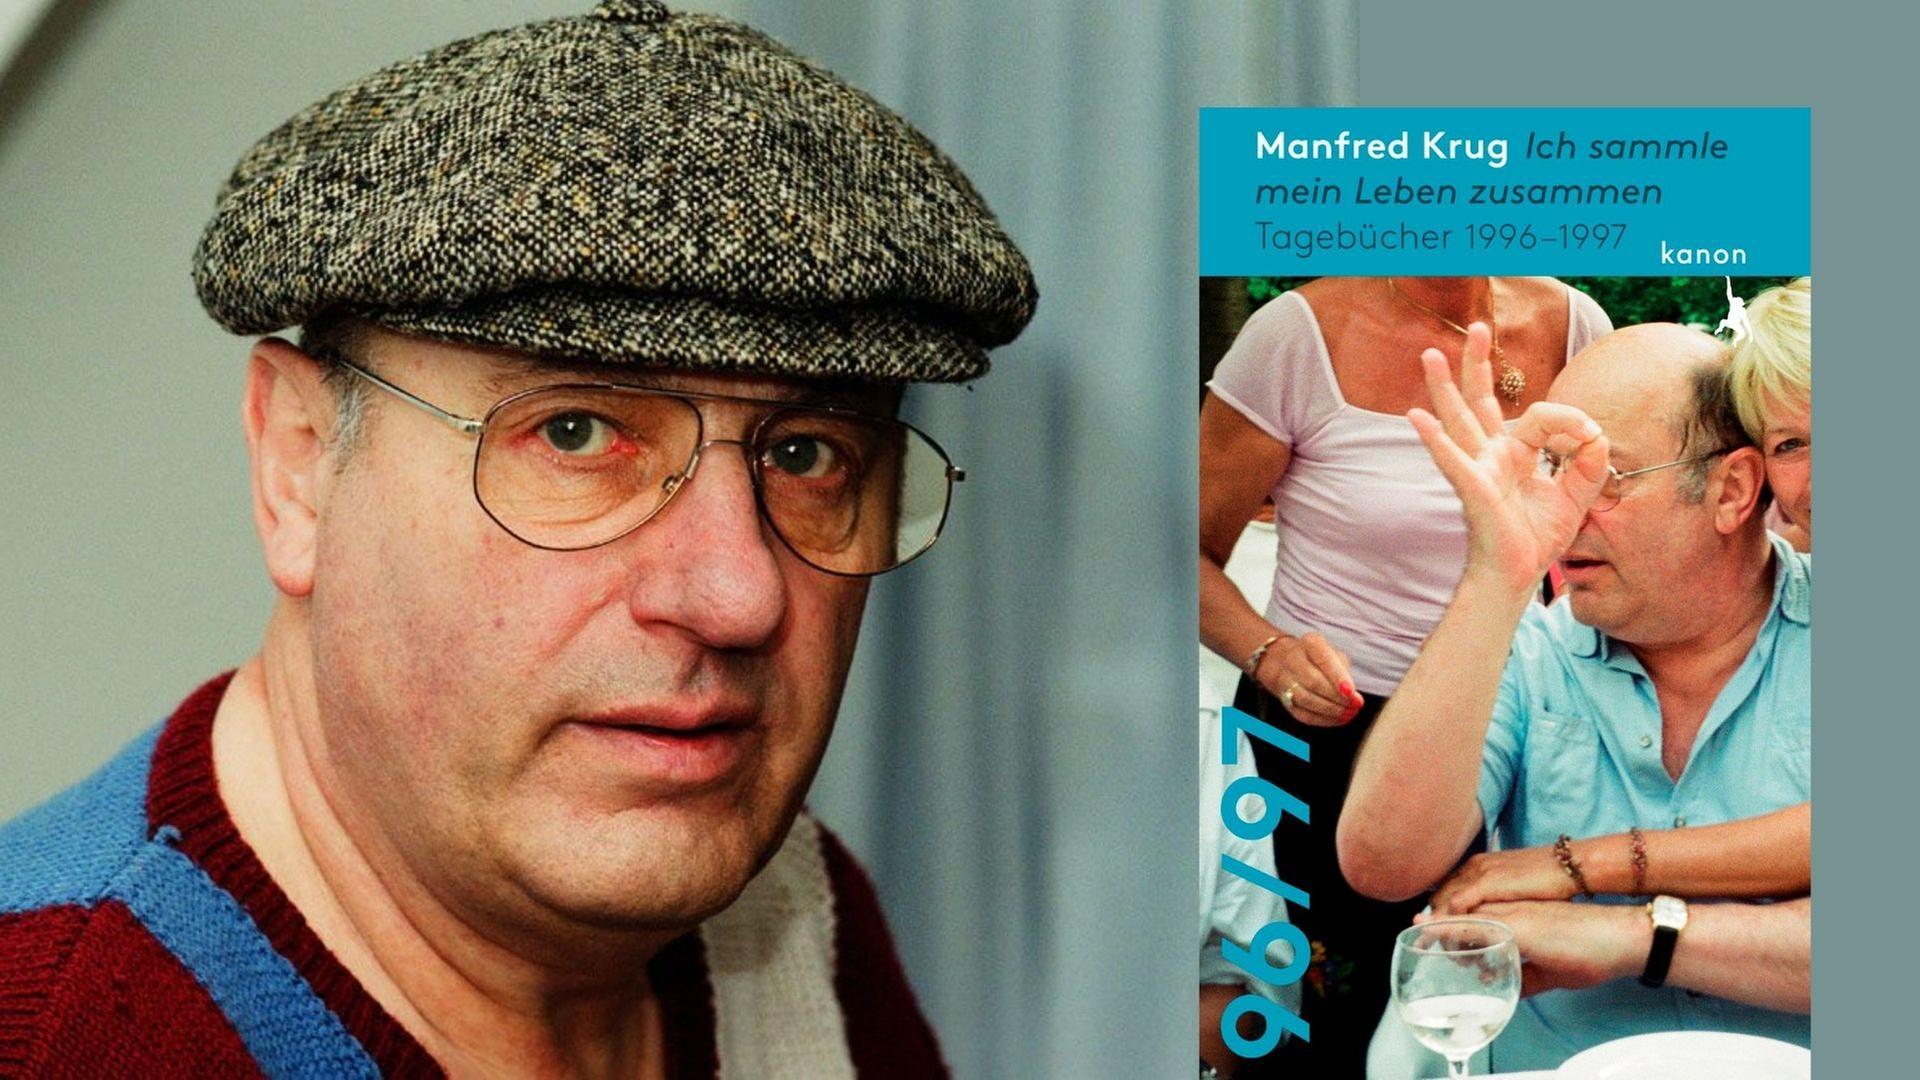 Manfred Krug: "Ich sammle mein Leben zusammen"